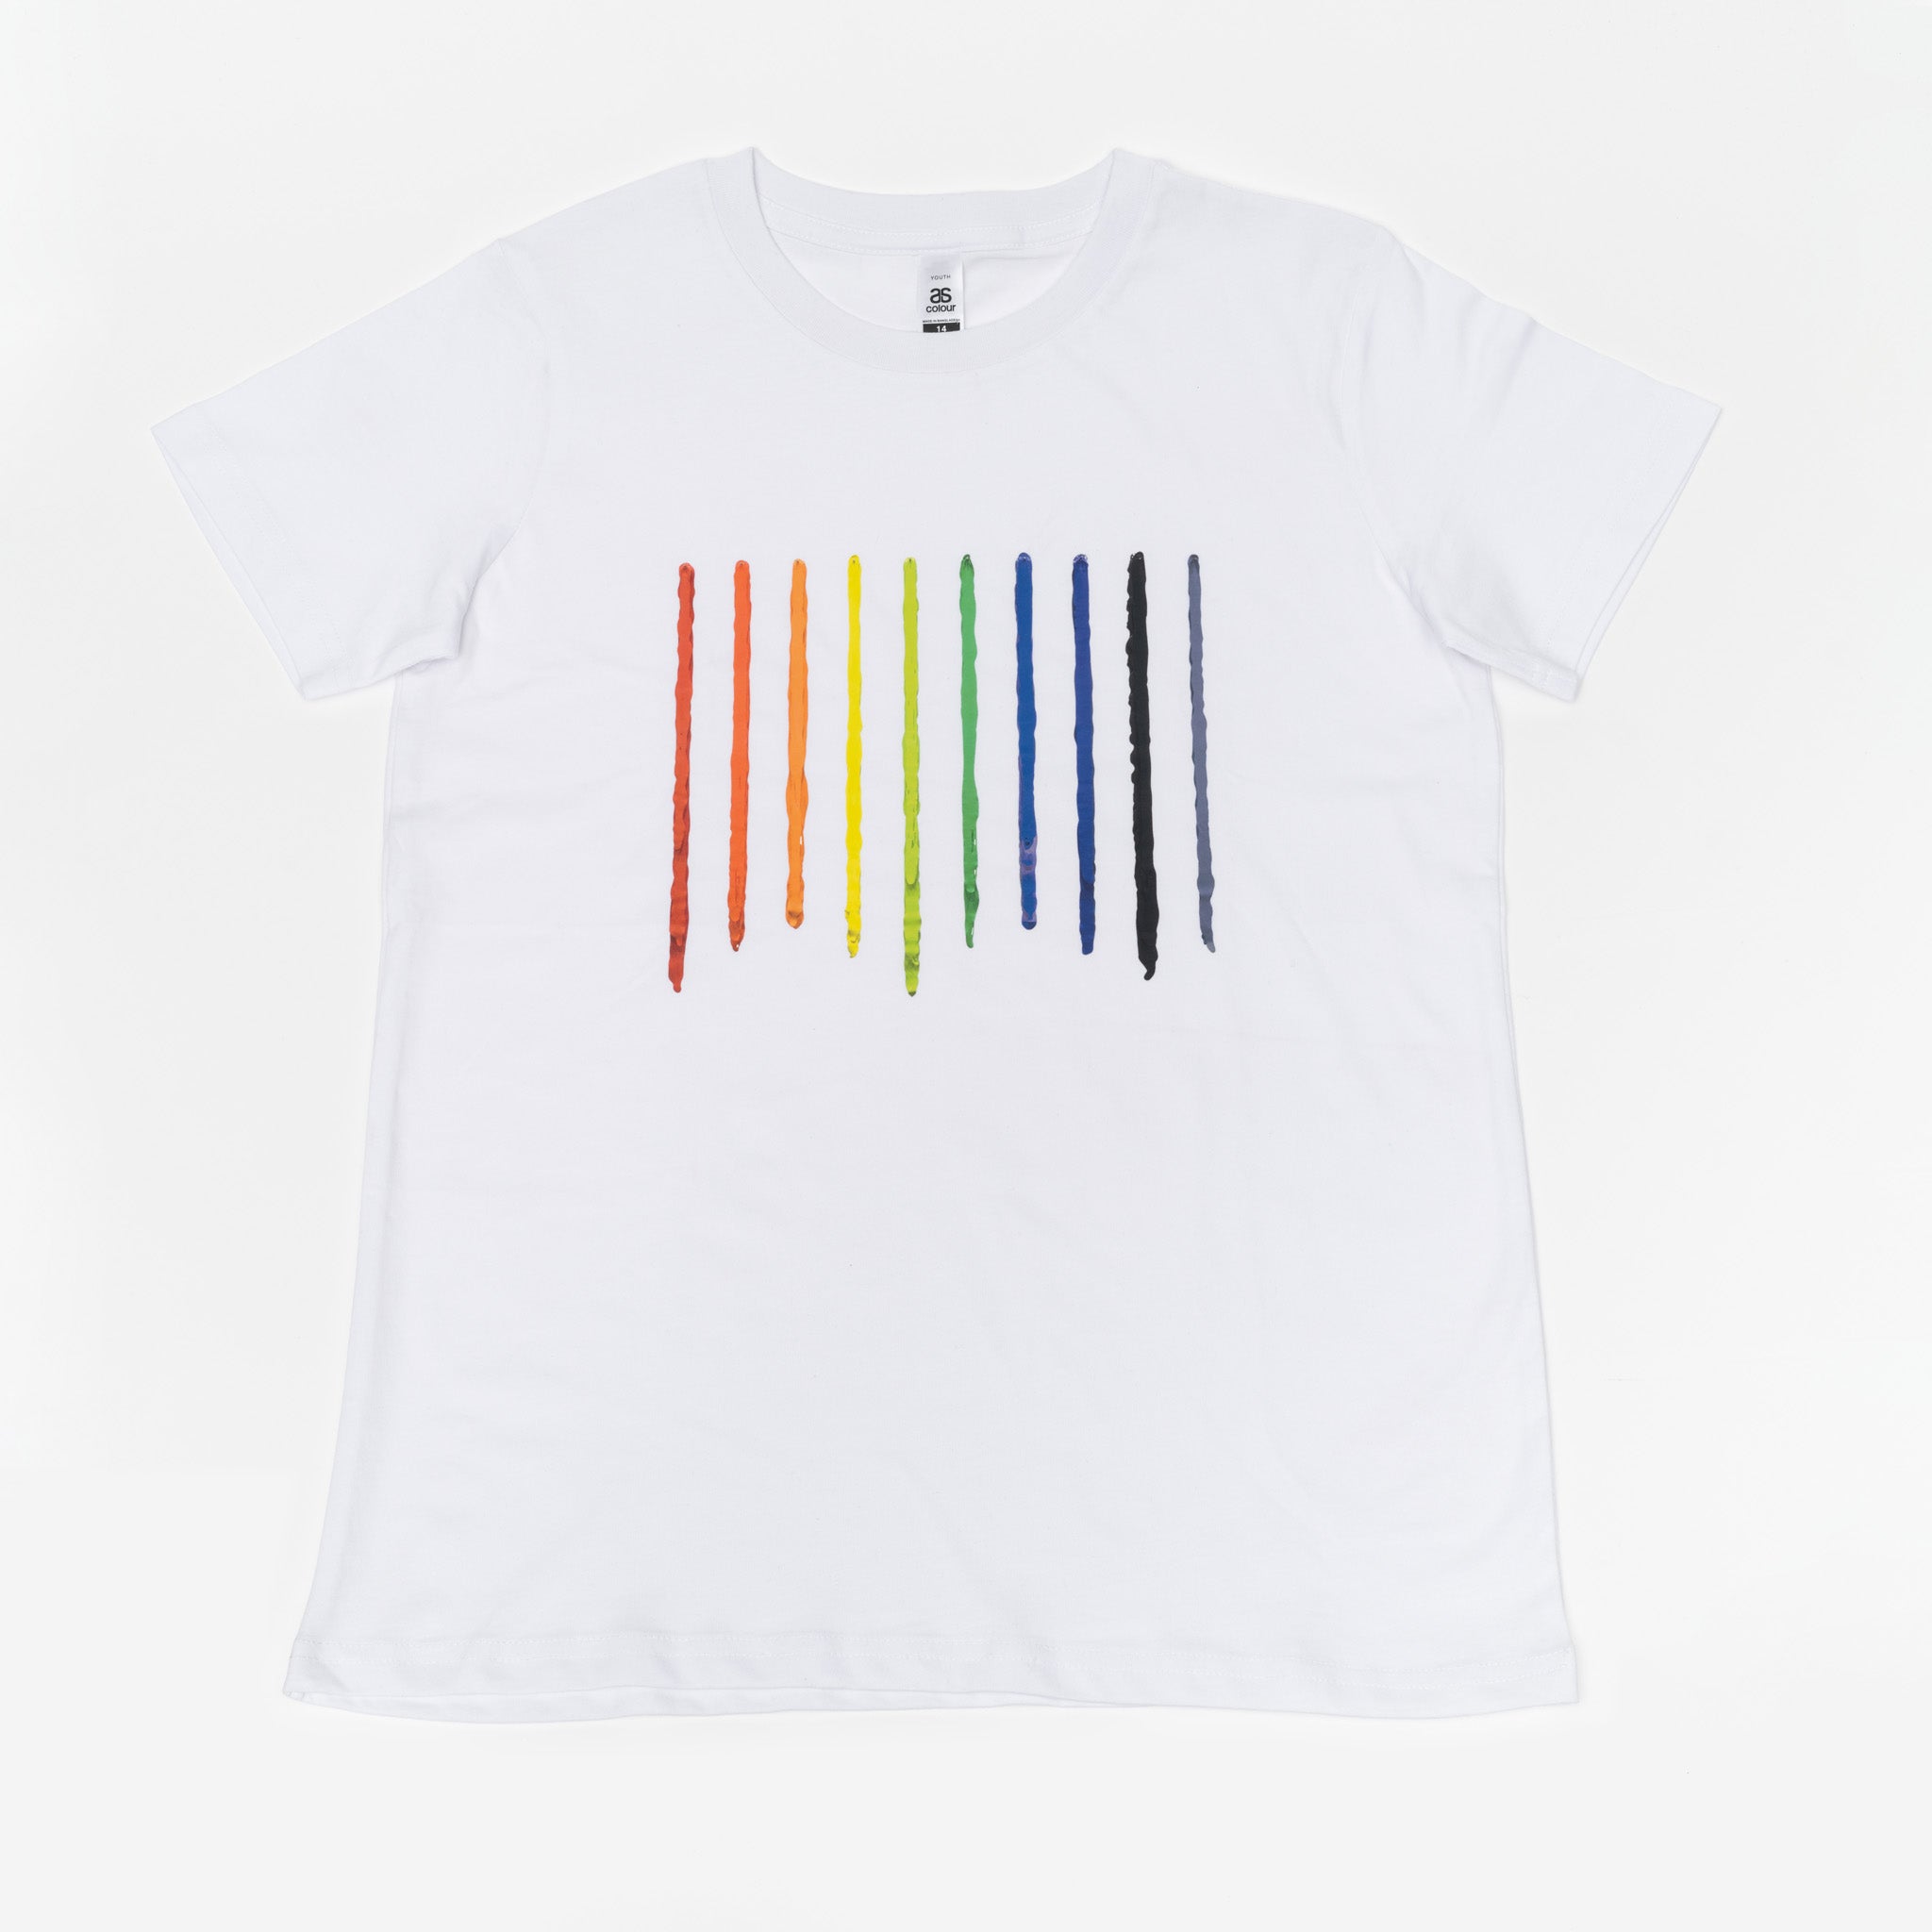 Helen Calder Arrangement for 15 Colours T-shirt